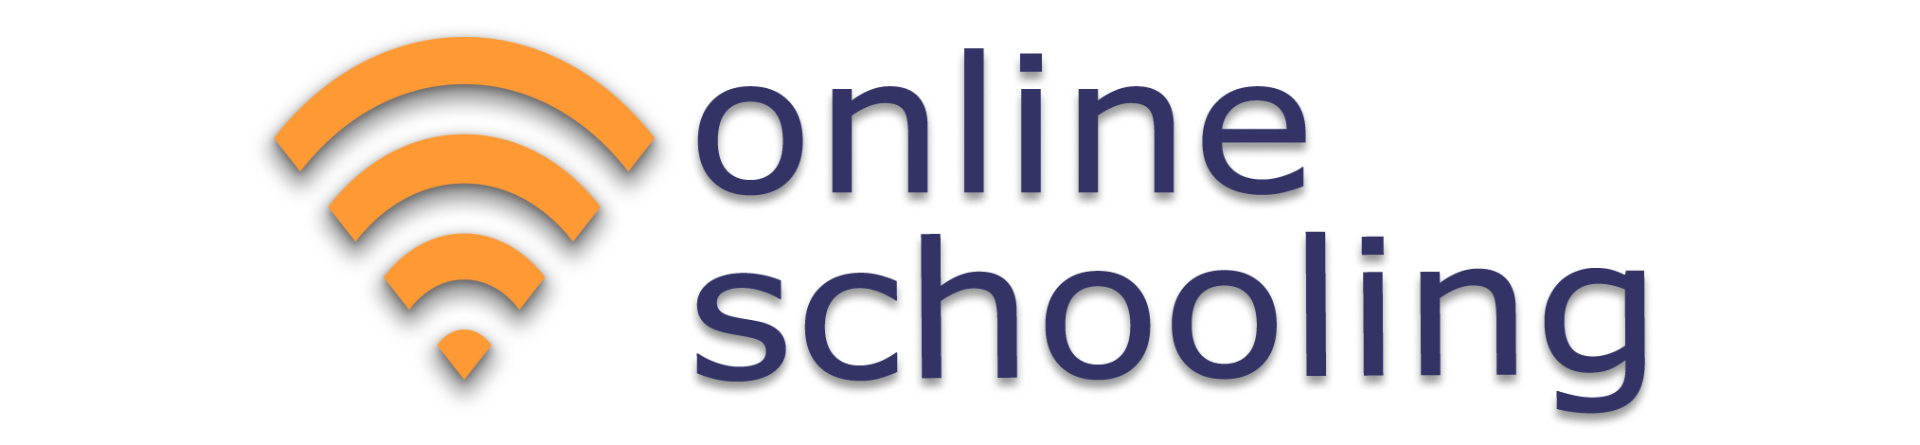 Συμμετοχή στο Ευρωπαϊκό Πρόγραμμα “Online Schooling”